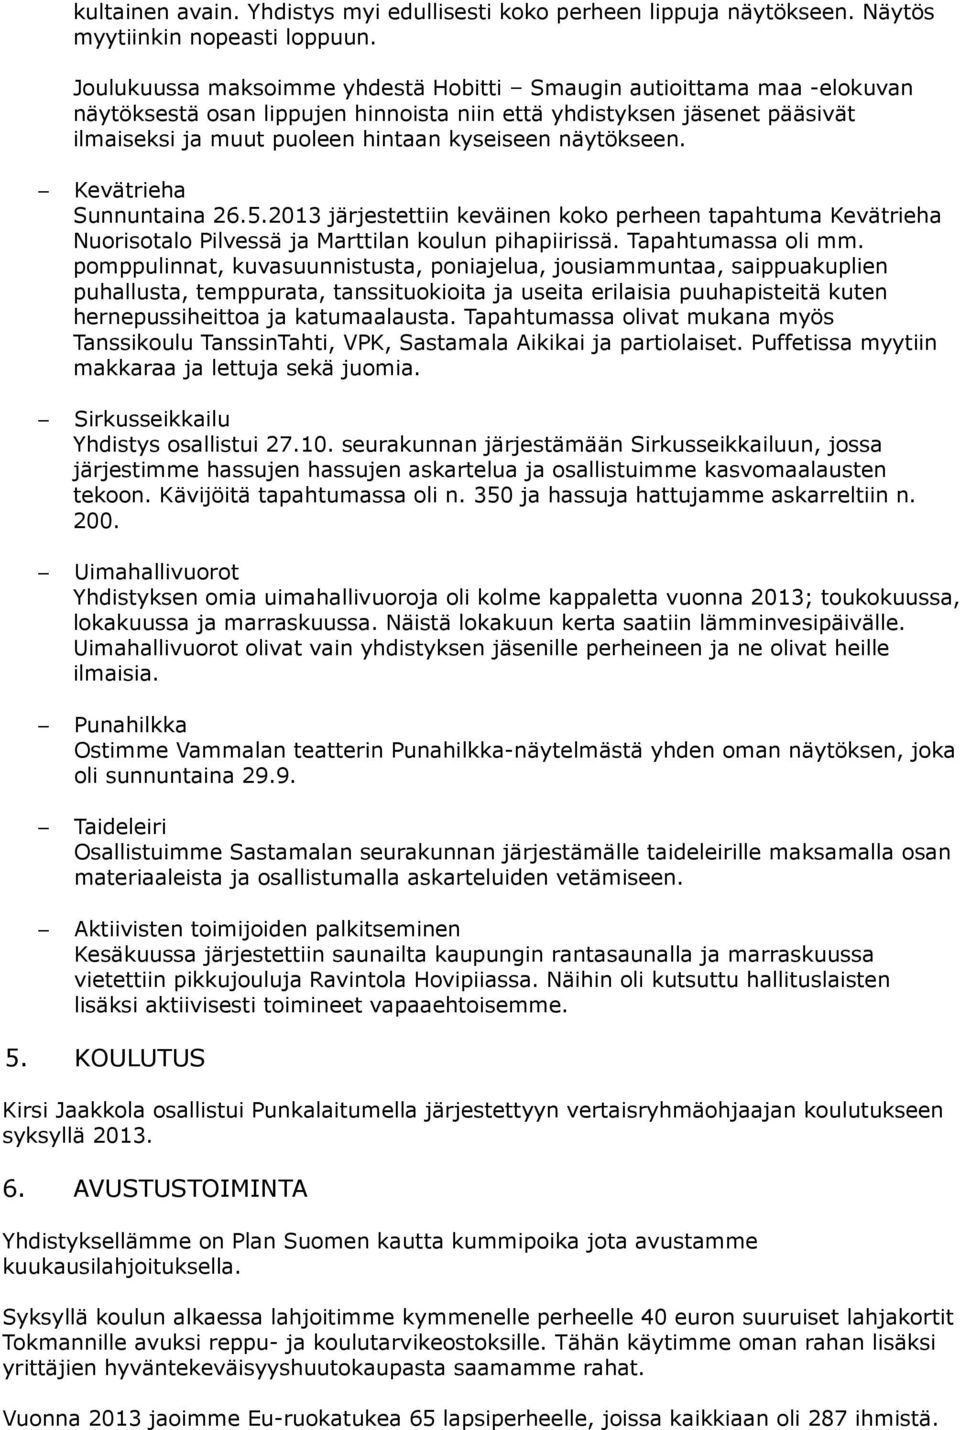 näytökseen. Kevätrieha Sunnuntaina 26.5.2013 järjestettiin keväinen koko perheen tapahtuma Kevätrieha Nuorisotalo Pilvessä ja Marttilan koulun pihapiirissä. Tapahtumassa oli mm.